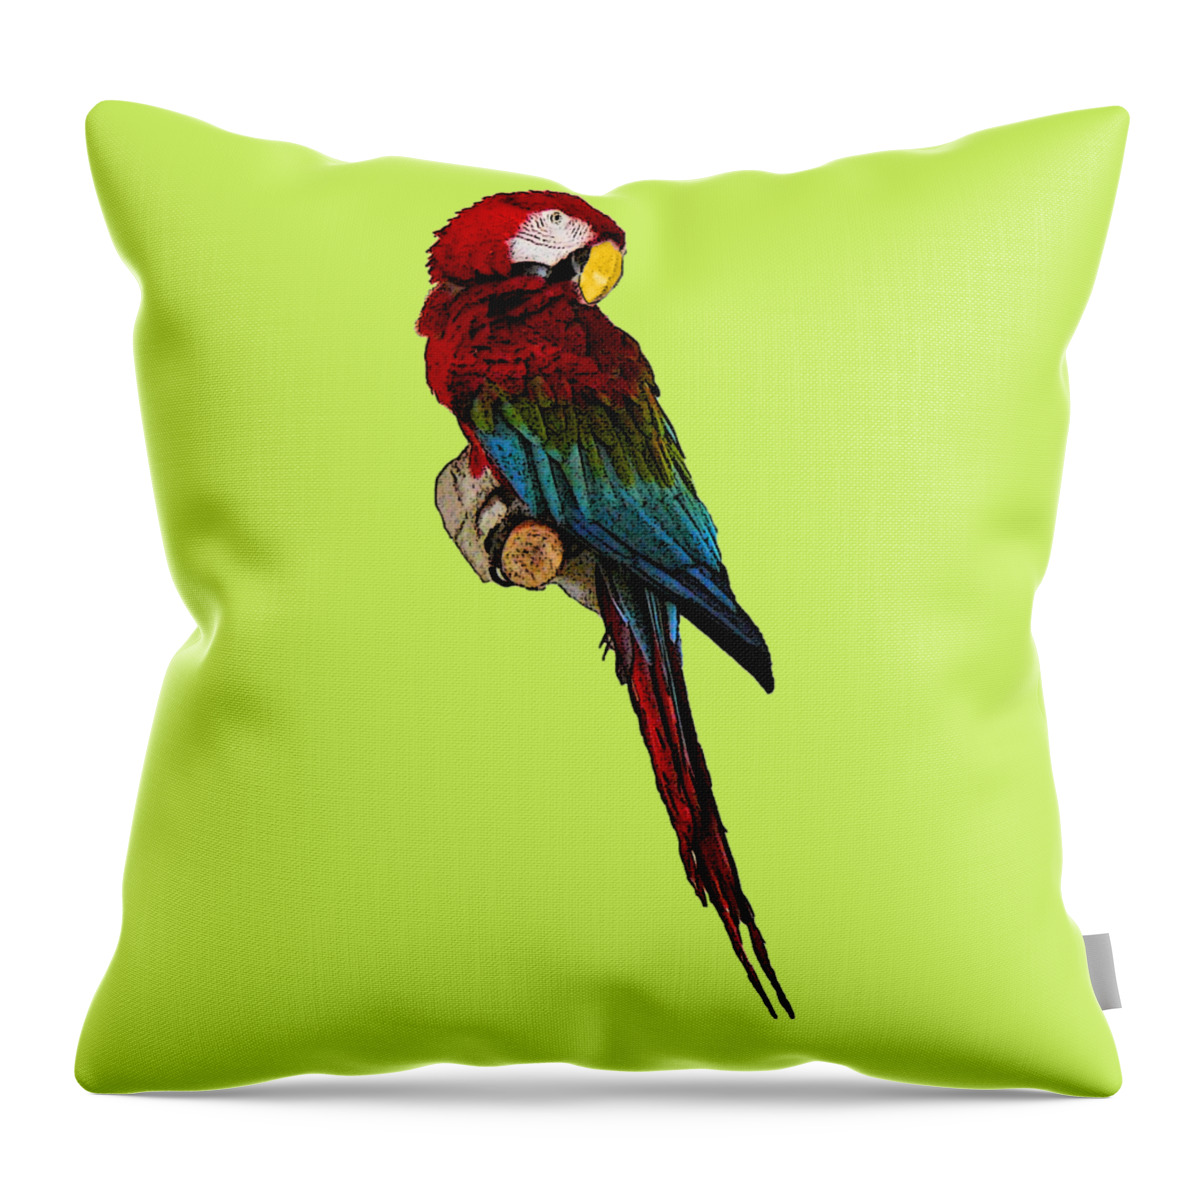 Digital Art Throw Pillow featuring the digital art Parrot Art by Francesca Mackenney